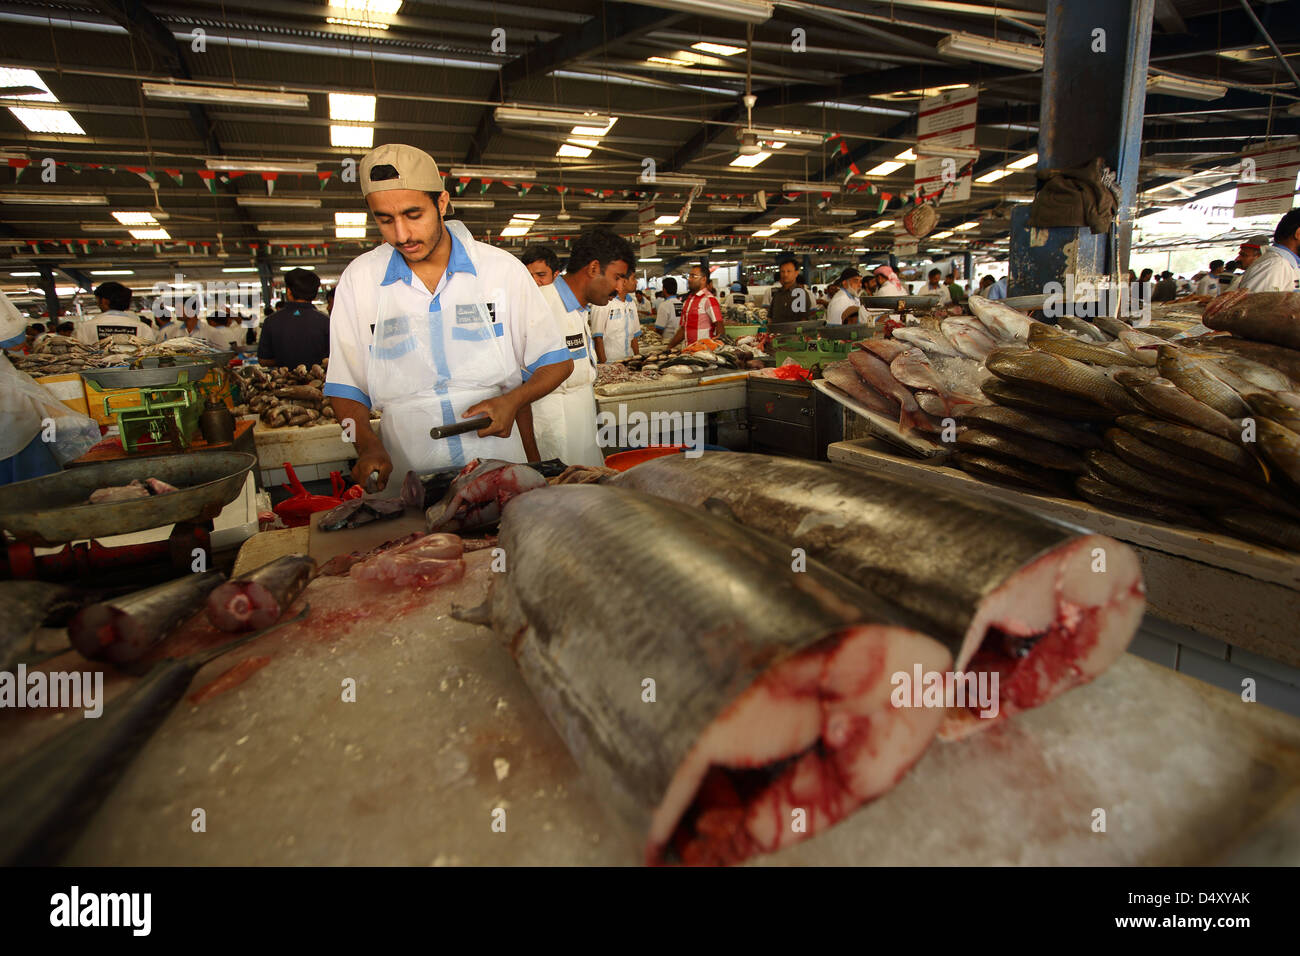 Fish market, Dubai, United Arab Emirates Stock Photo